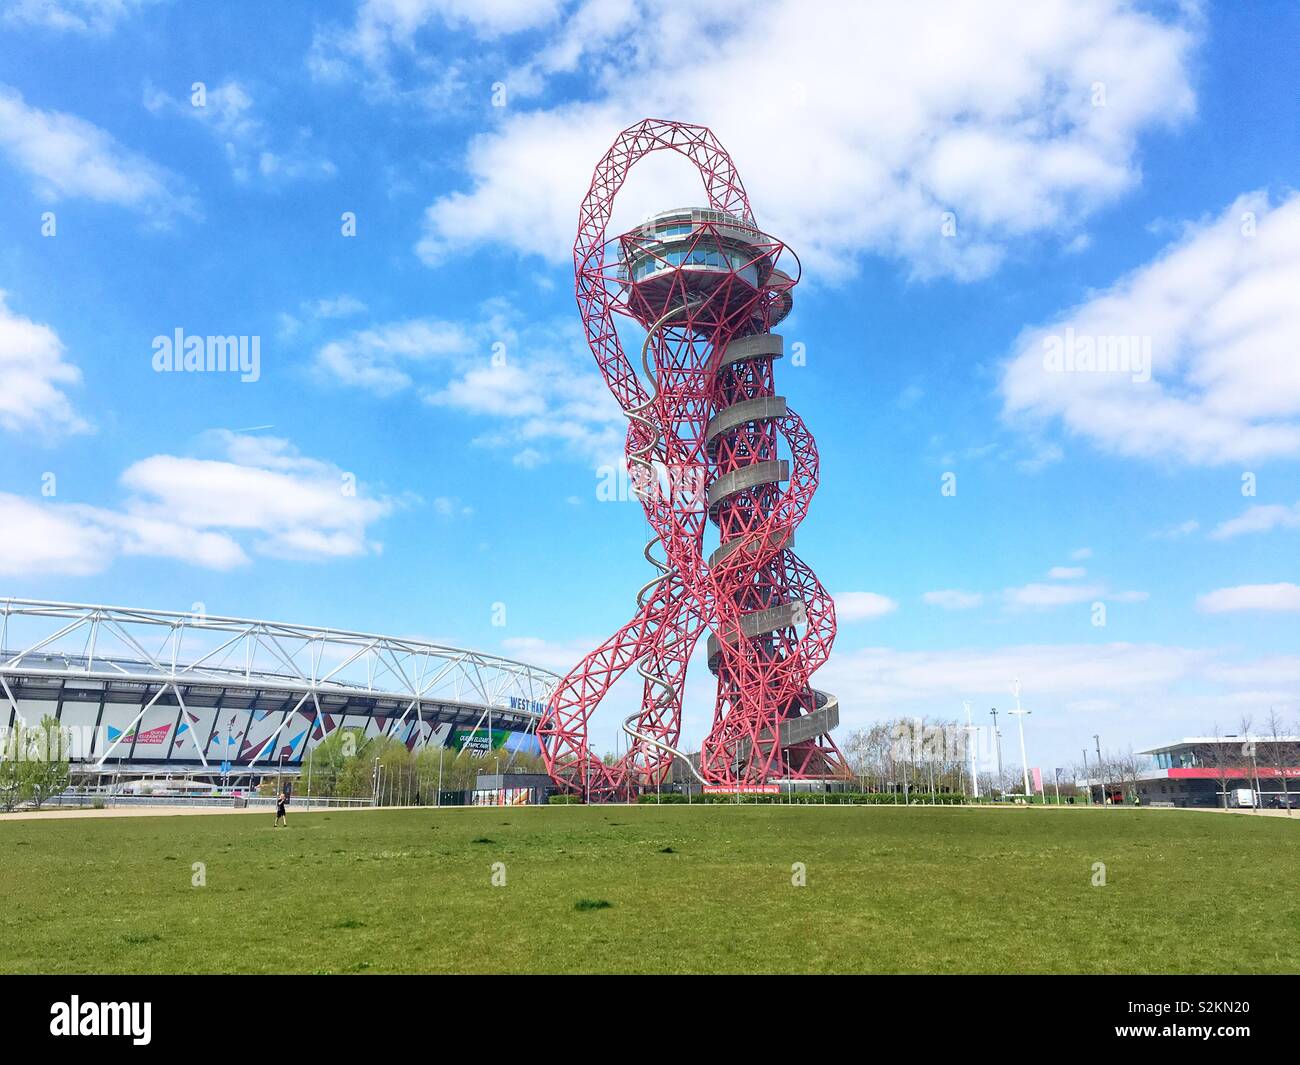 L'orbite d'ArcelorMittal 114,5 mètres de haut de la sculpture et tour d'observation et les glisser dans le Parc Olympique Queen Elizabeth à Stratford, Londres, Angleterre, Royaume-Uni. Banque D'Images